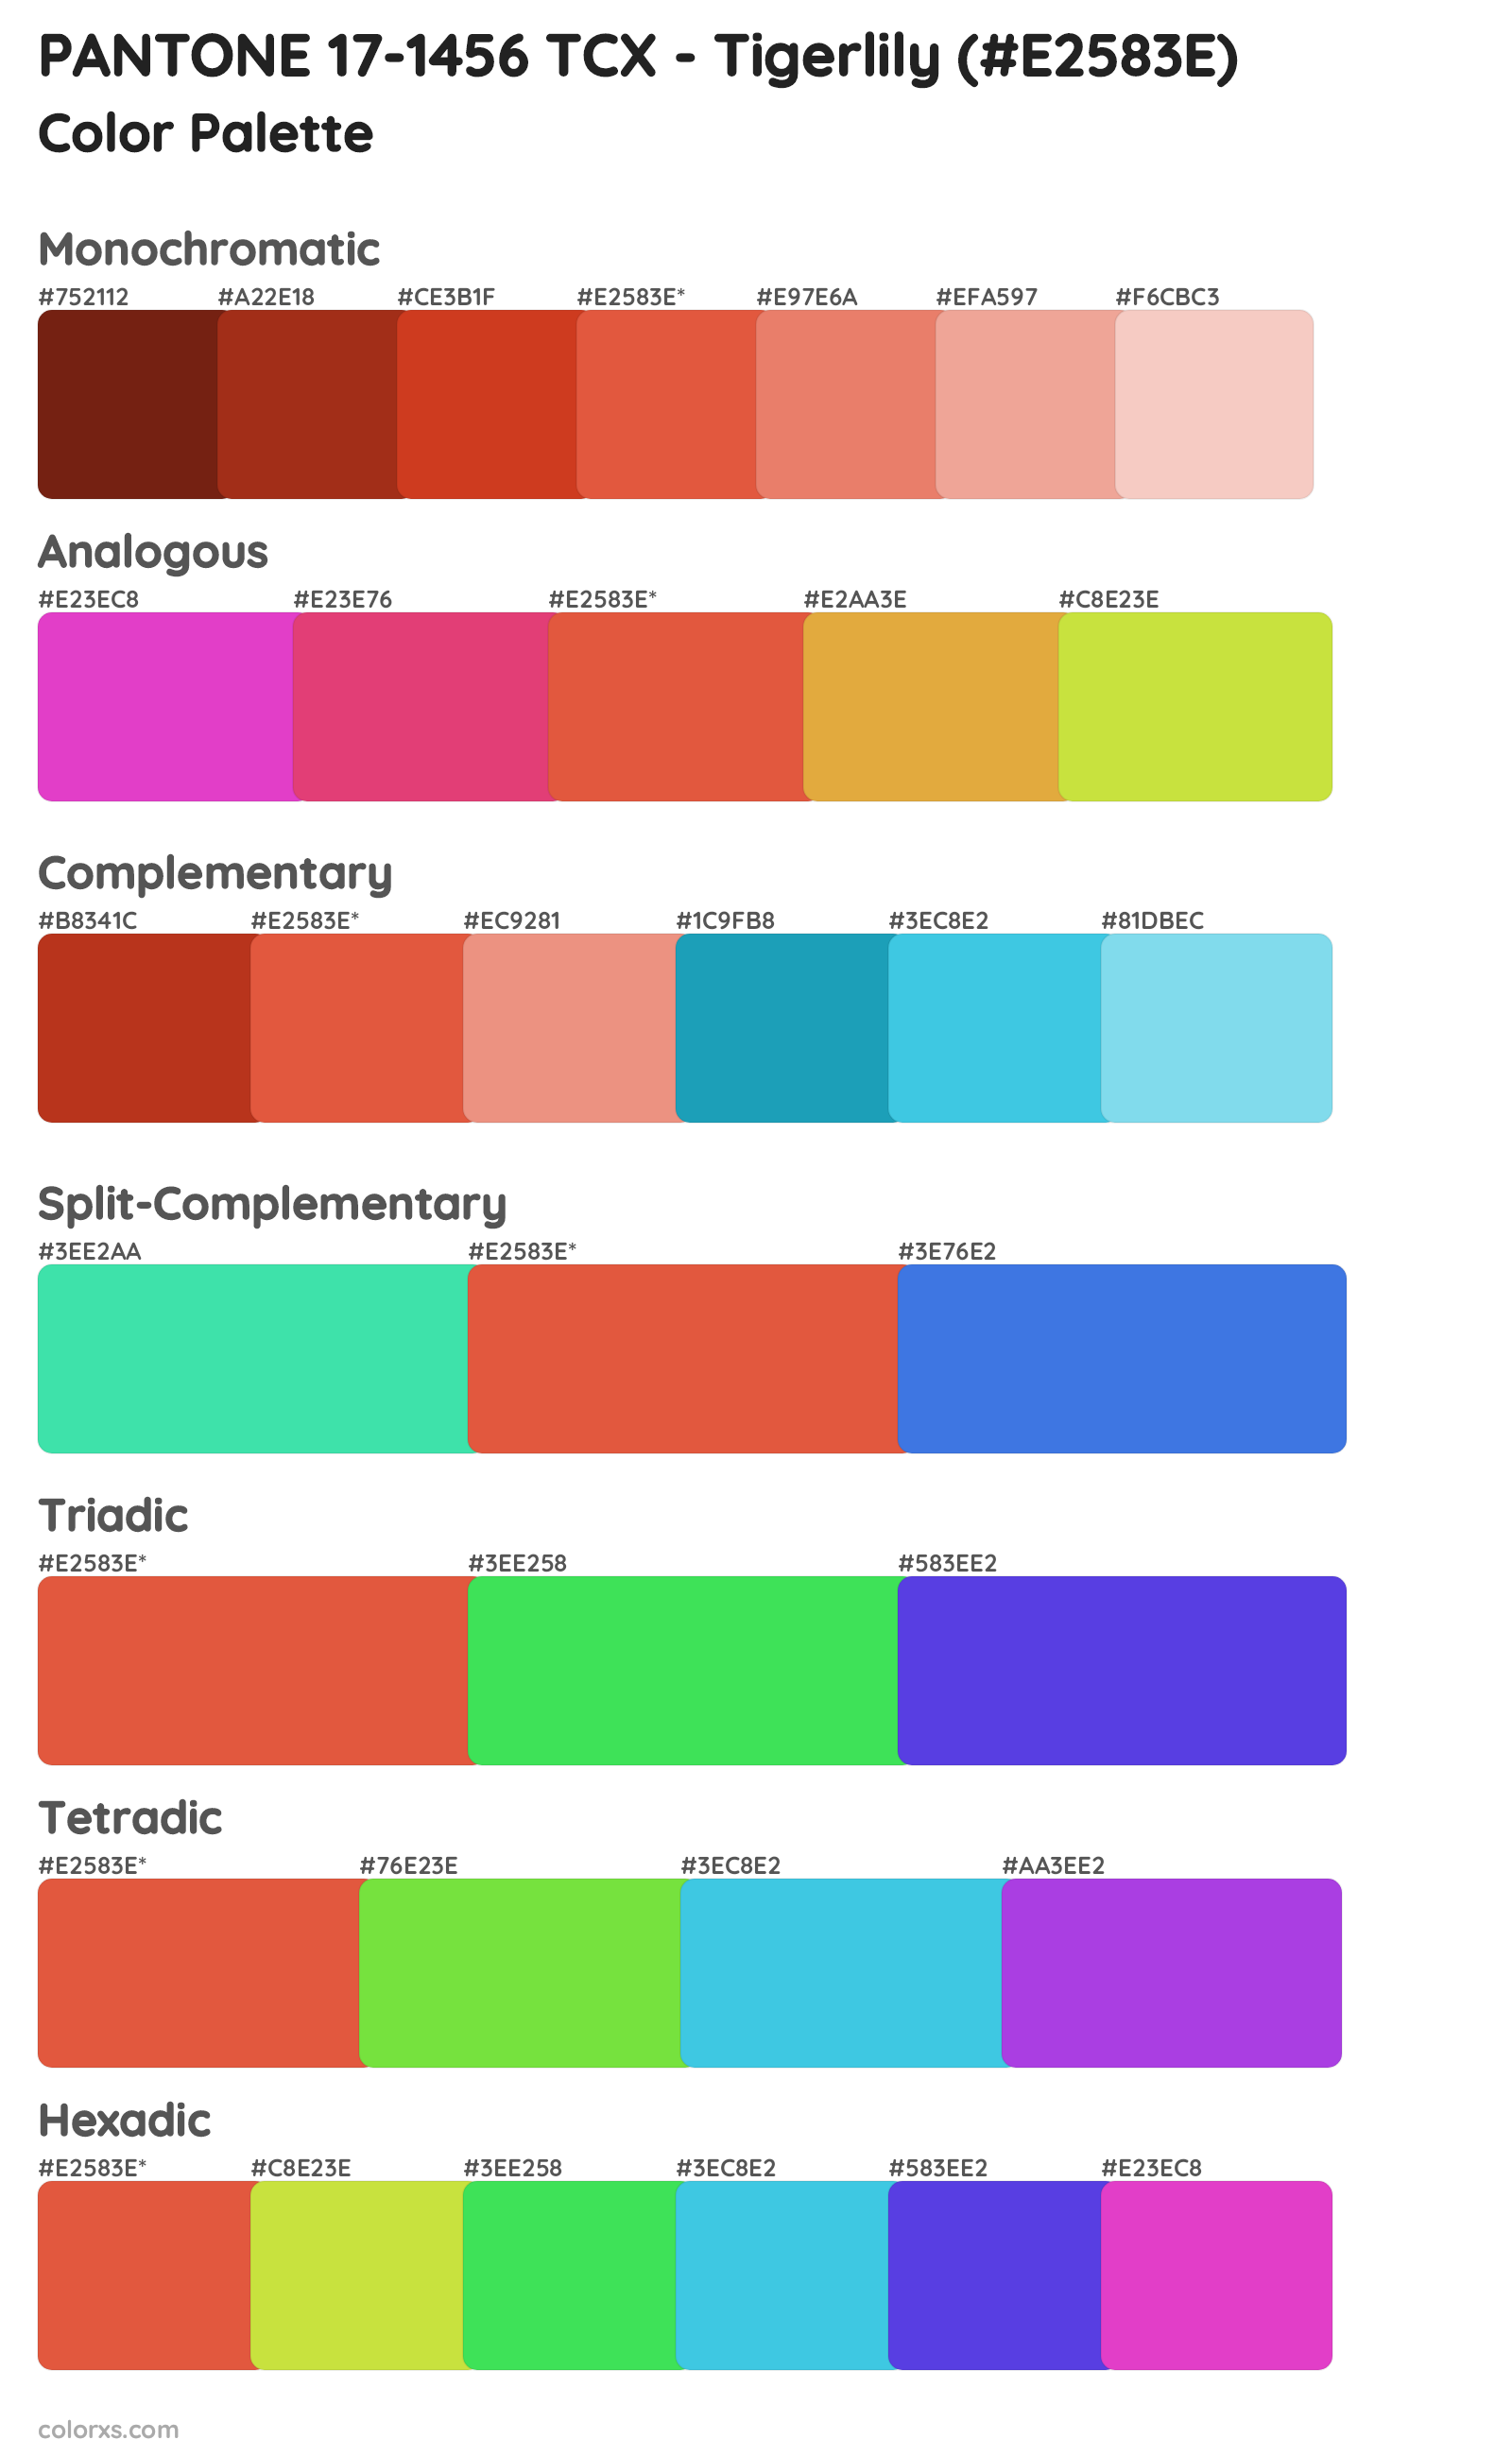 PANTONE 17-1456 TCX - Tigerlily Color Scheme Palettes